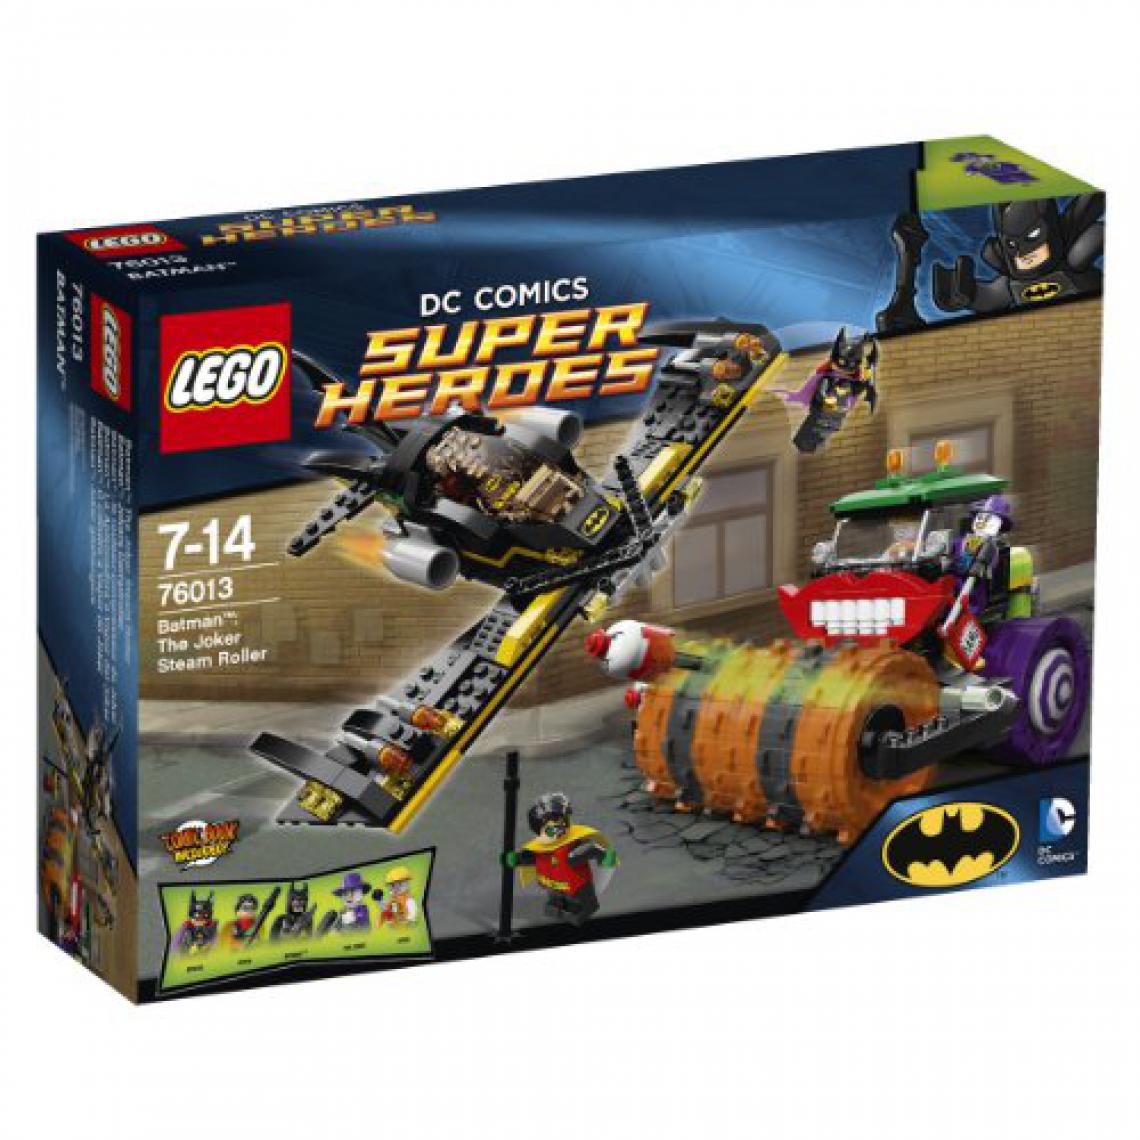 Lego - Lego Dc comics Super Heroes Batman The Joker Steam Roller - Briques et blocs